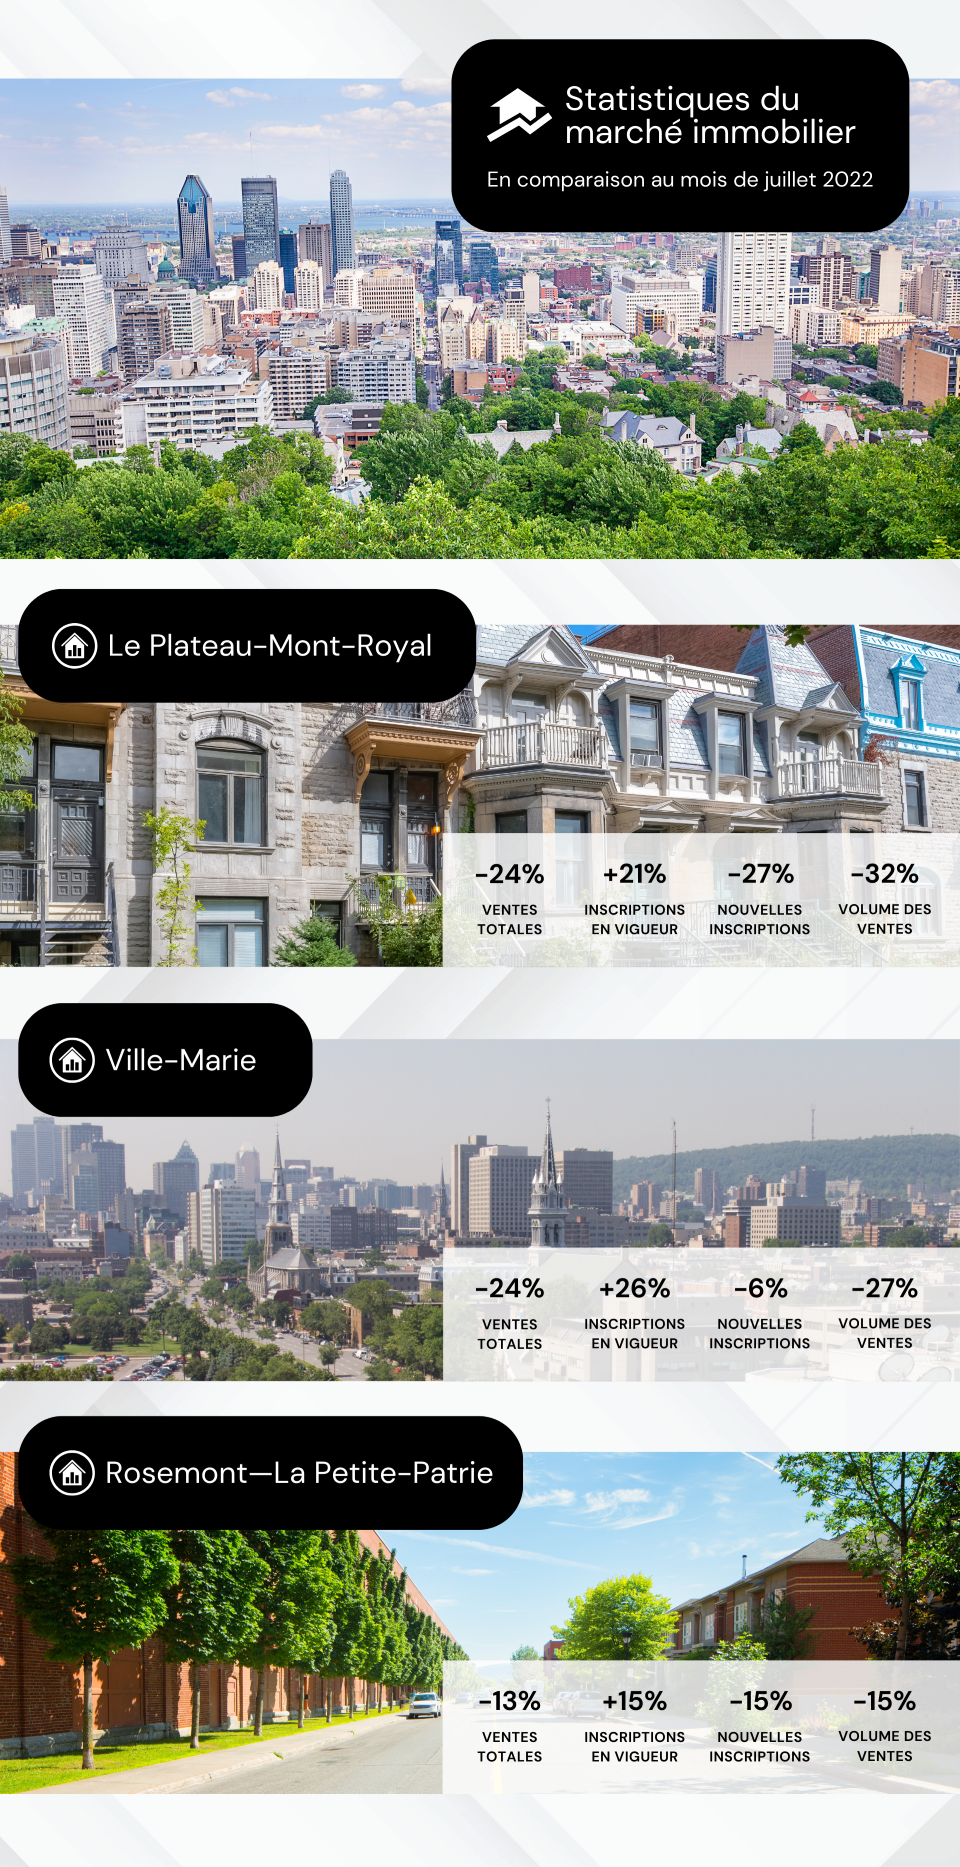 Statistiques immobilières du mois de juillet 2023, en comparaison au mois de juillet 2022, pour les arrondissements du Plateau-Mont-Royal, Rosemont/La Petite-Patrie et Ville-Marie.